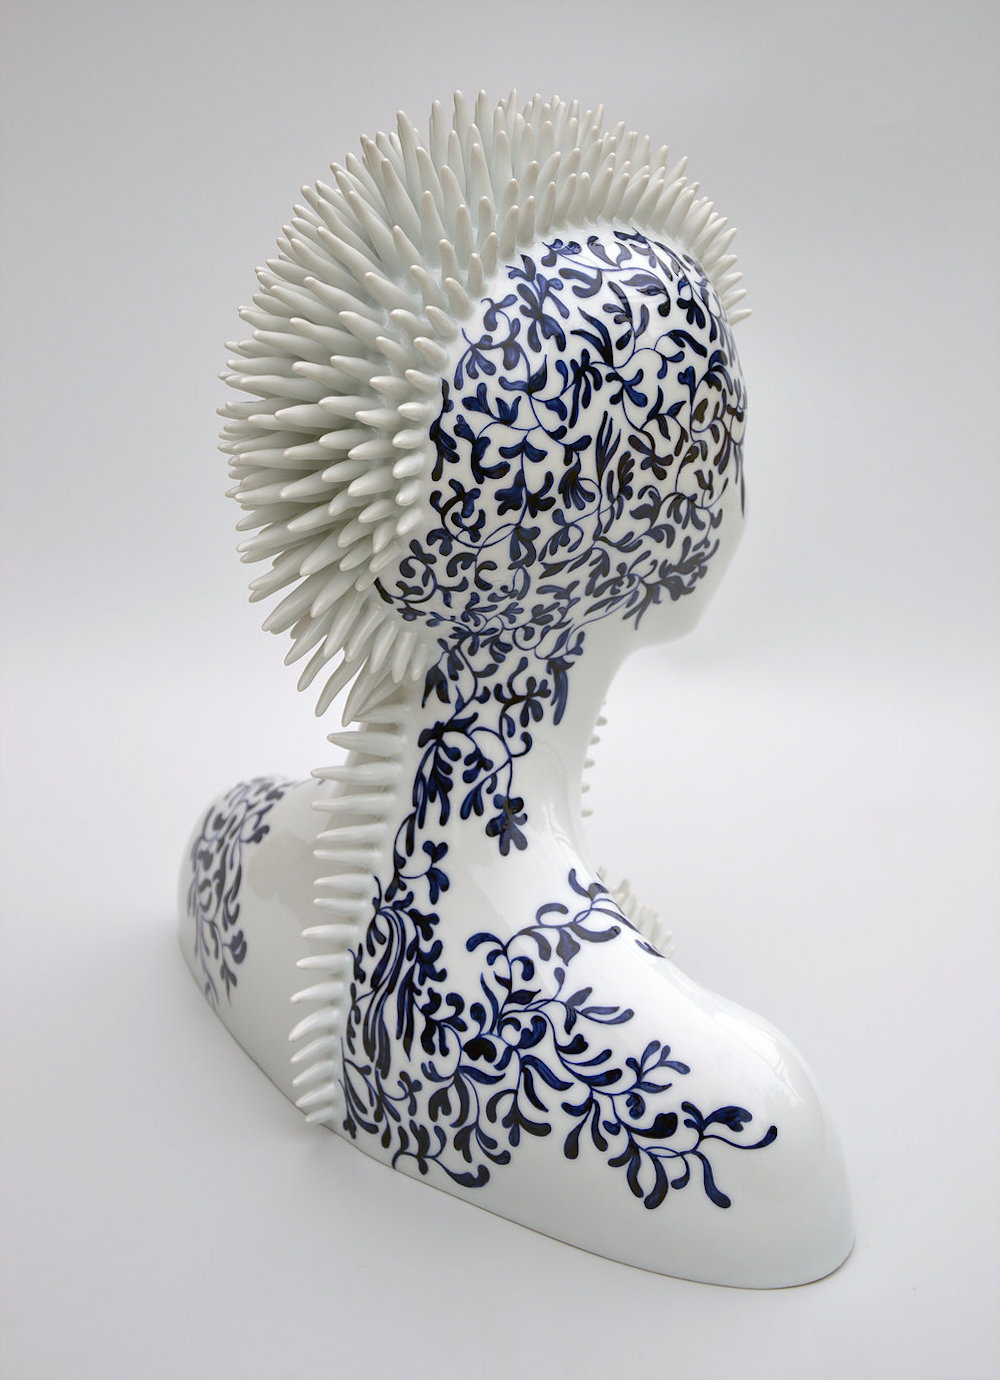 surreal porcelain sculptures by juliette clovis